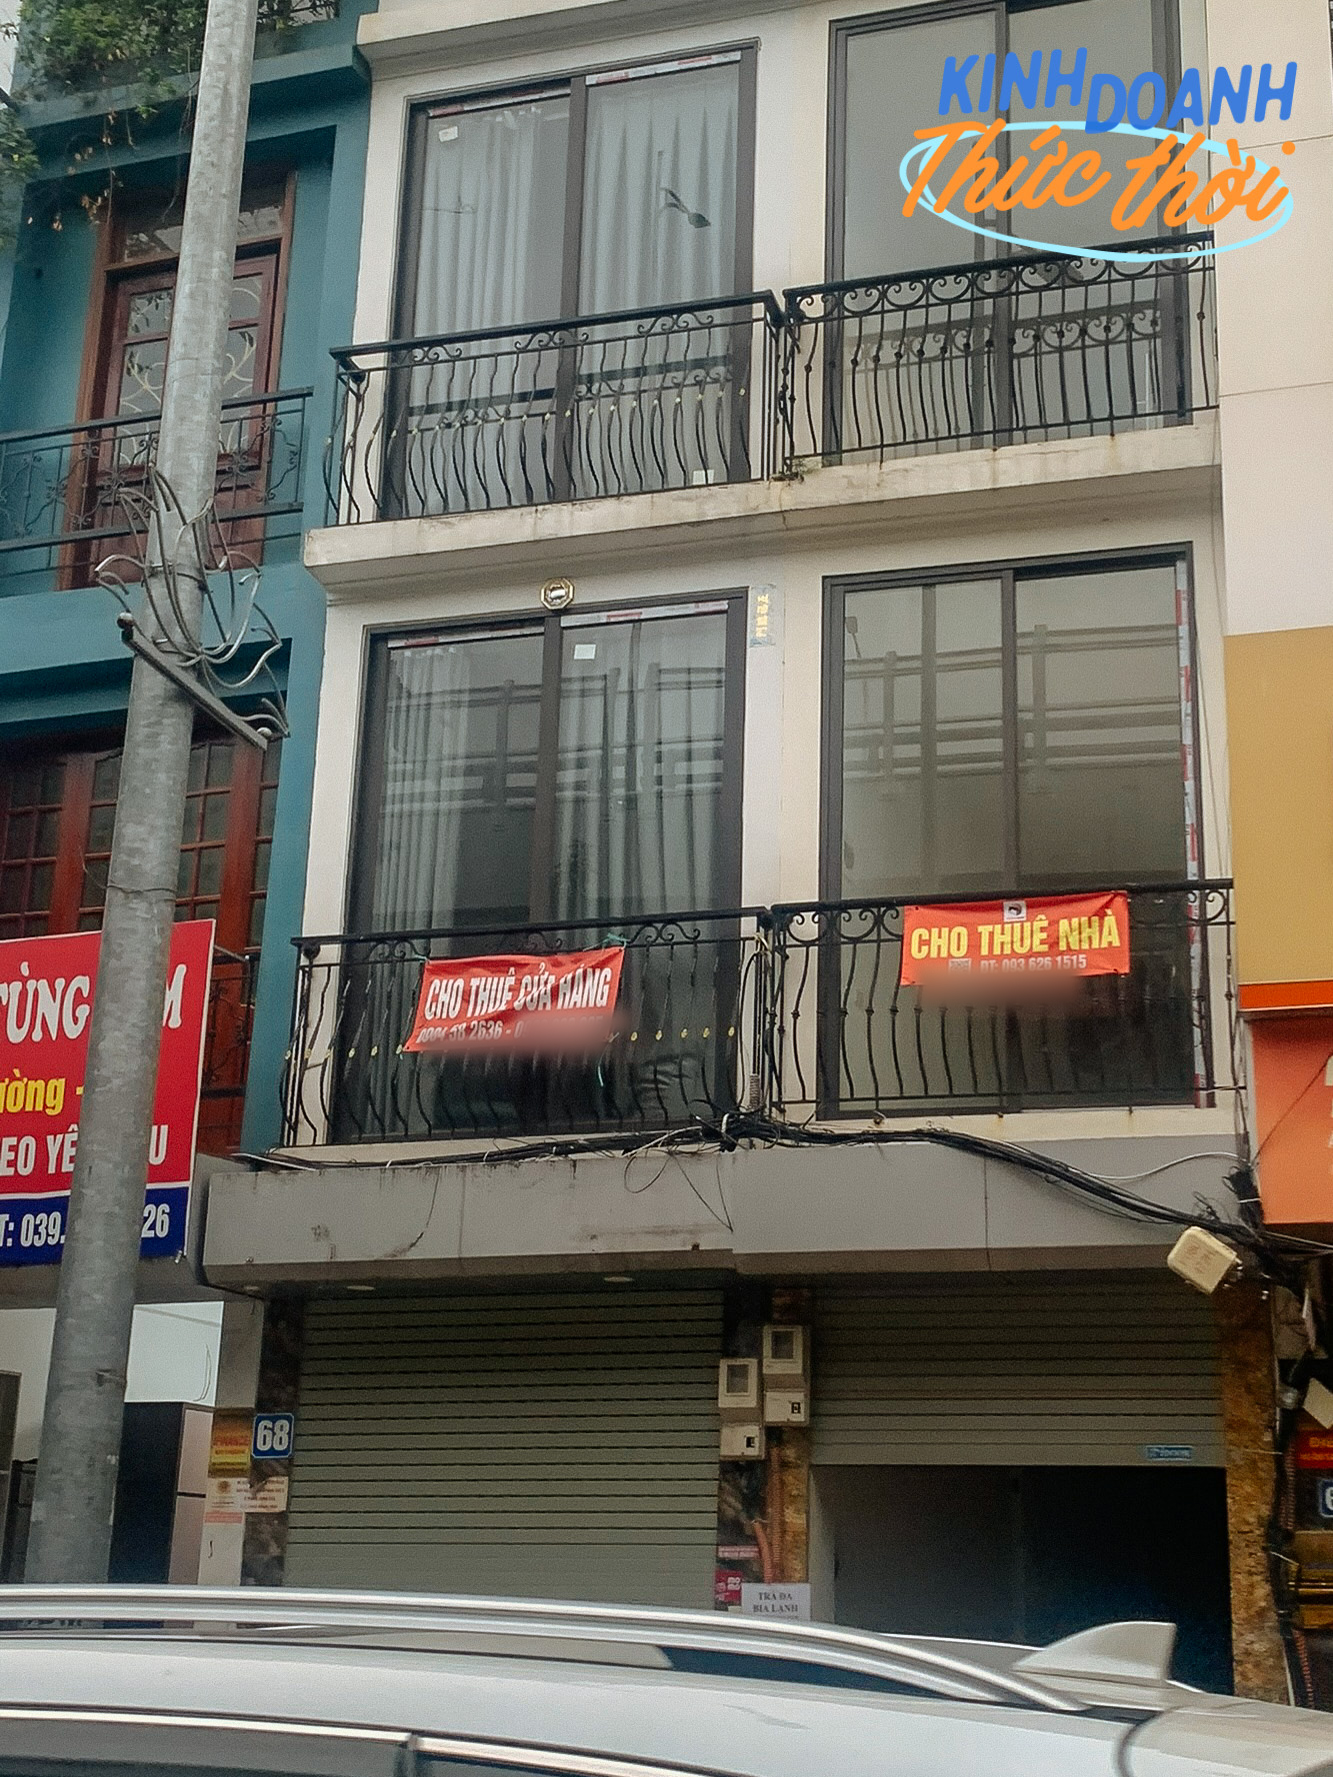 Nhiều hàng quán ở Hà Nội chấp nhận chuyển về ngõ nhỏ hoặc bán vỉa hè vì không đủ chi phí thuê nhà mặt phố- Ảnh 3.